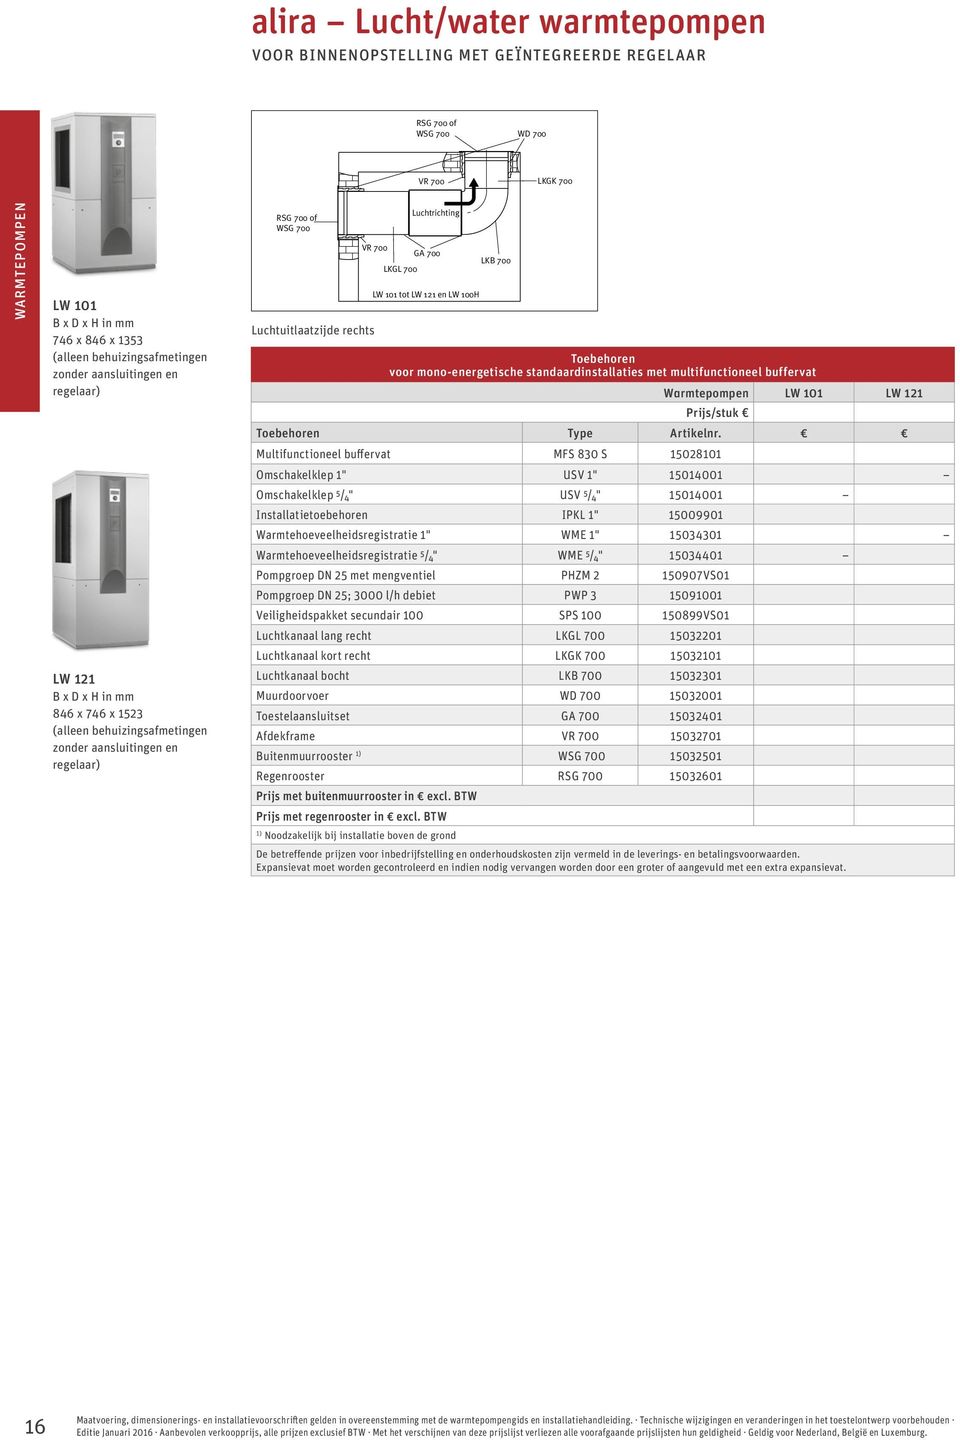 700 Toebehoren voor mono-energetische standaardinstallaties met multifunctioneel buffervat Warmtepompen LW 101 LW 121 Toebehoren Type Artikelnr.